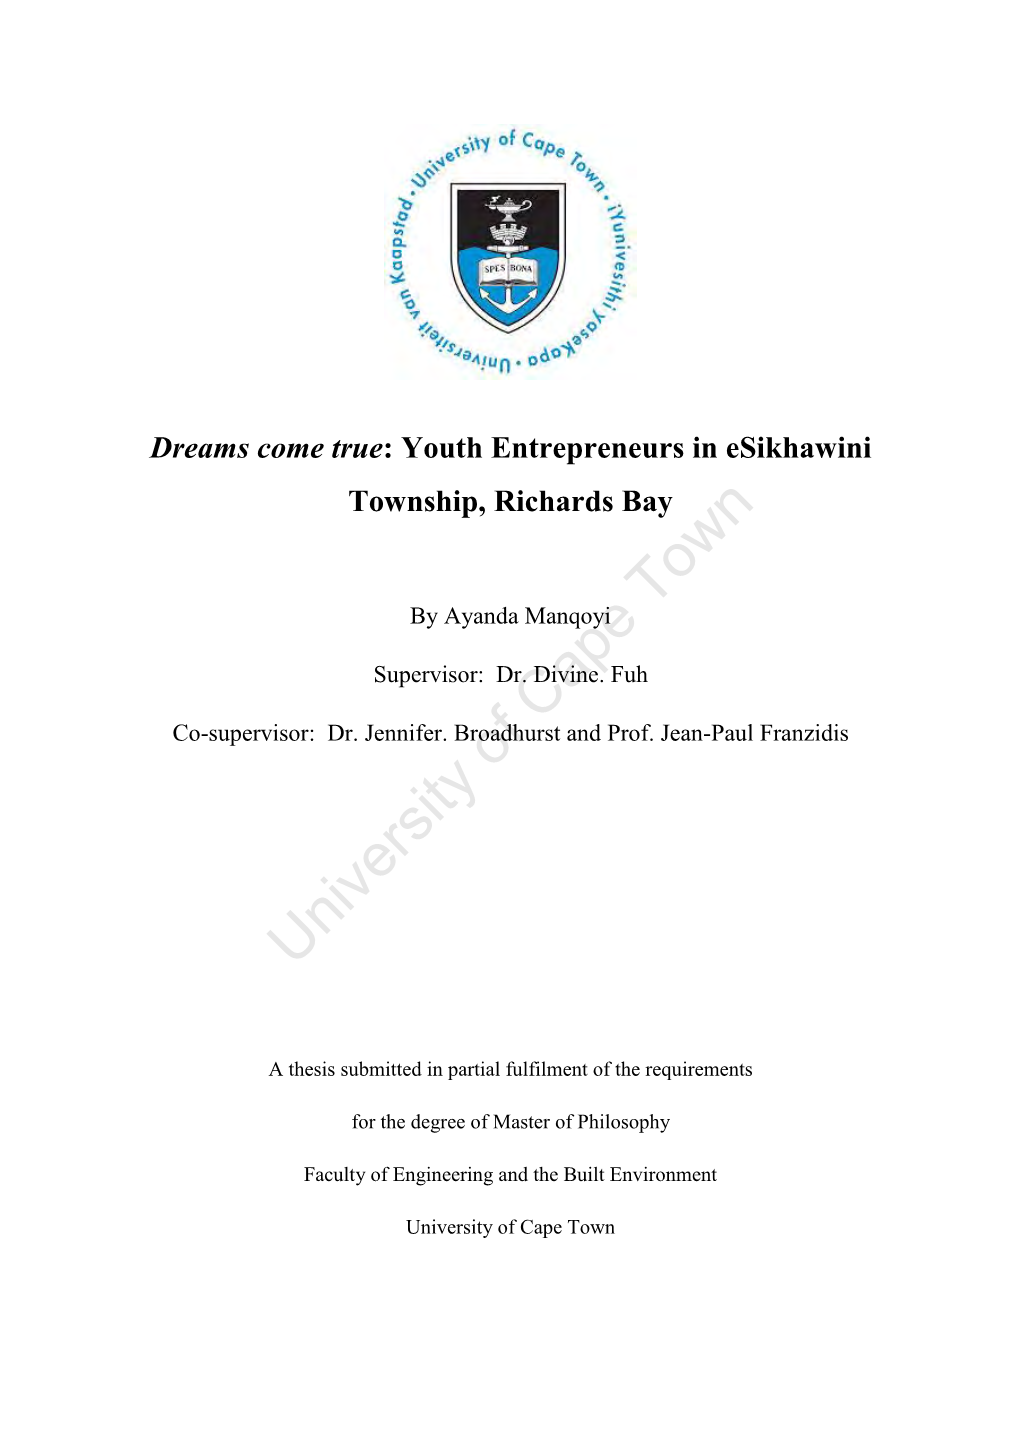 Youth Entrepreneurs in Esikhawini Township, Richards Bay